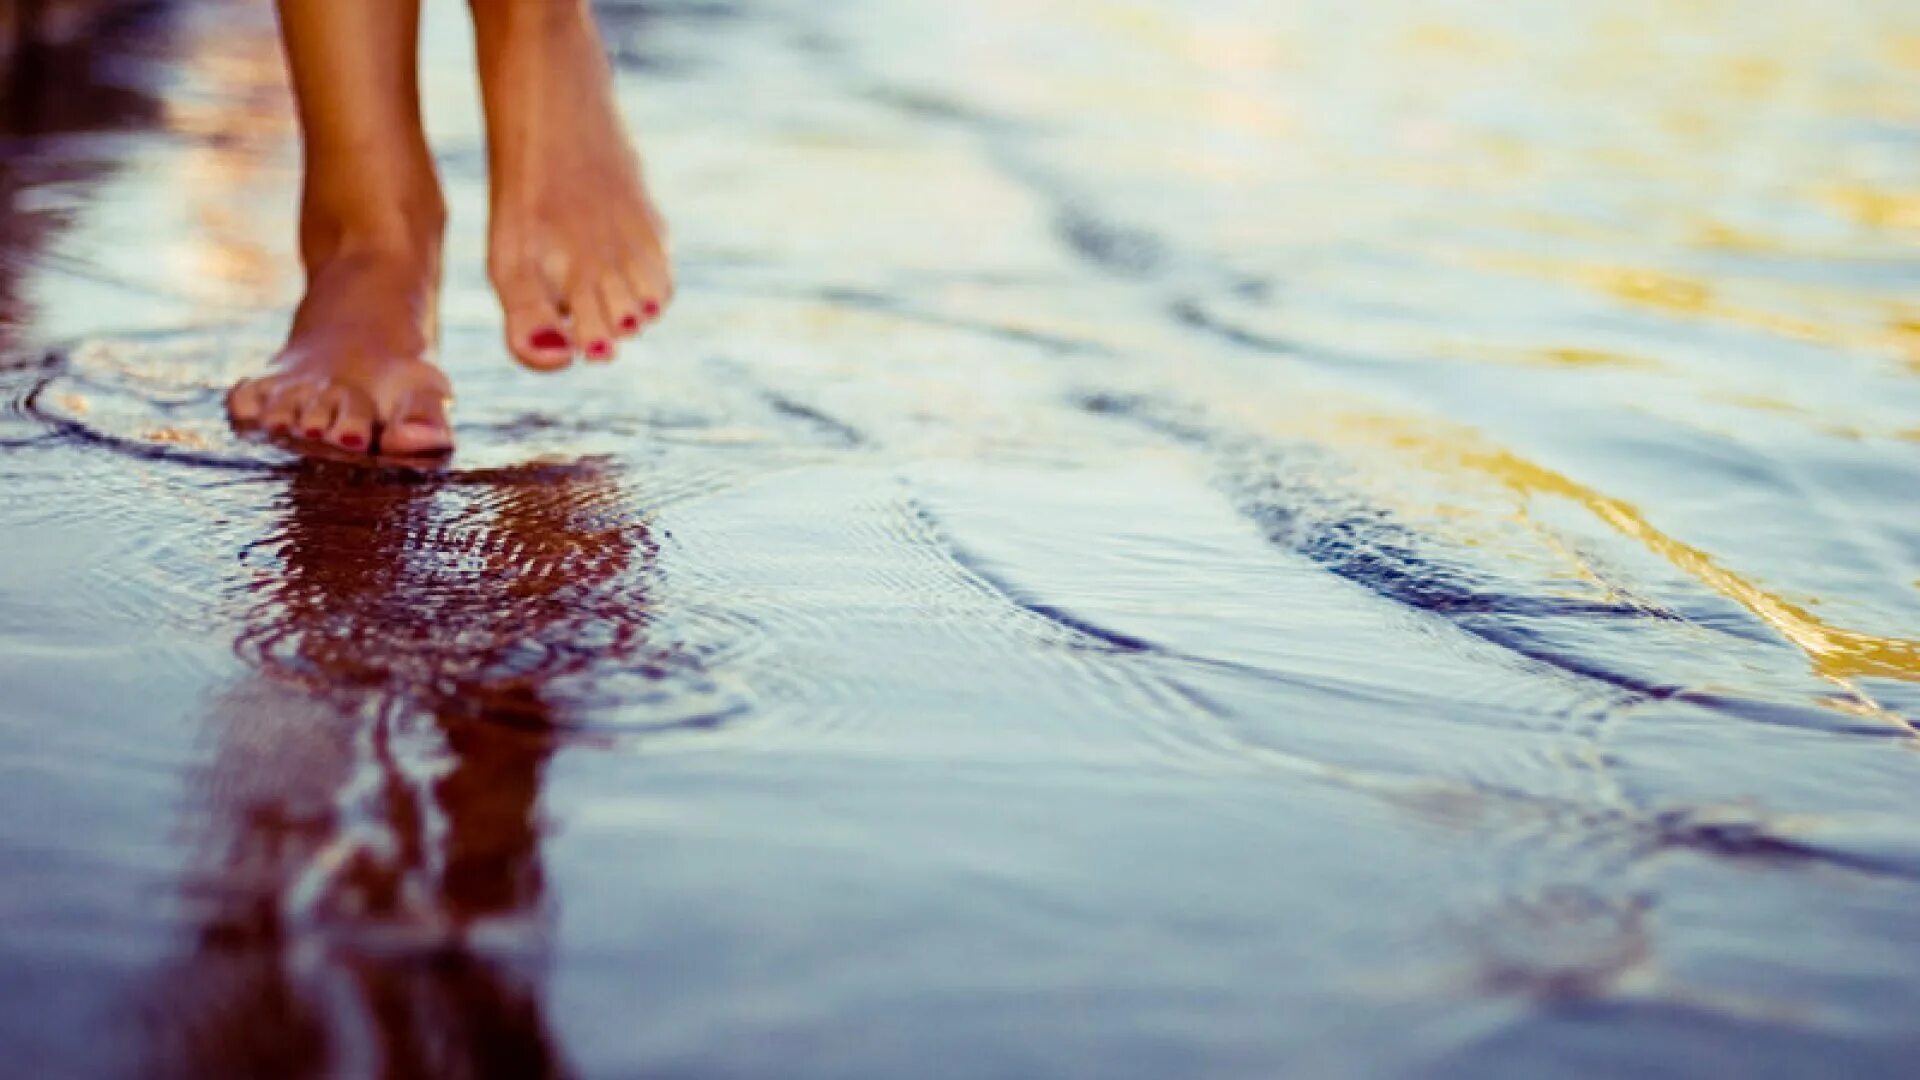 Ноги по воде. Босые ноги в воде. Ноги в луже. Маленькими шагами к счастью. Слушать станет легче